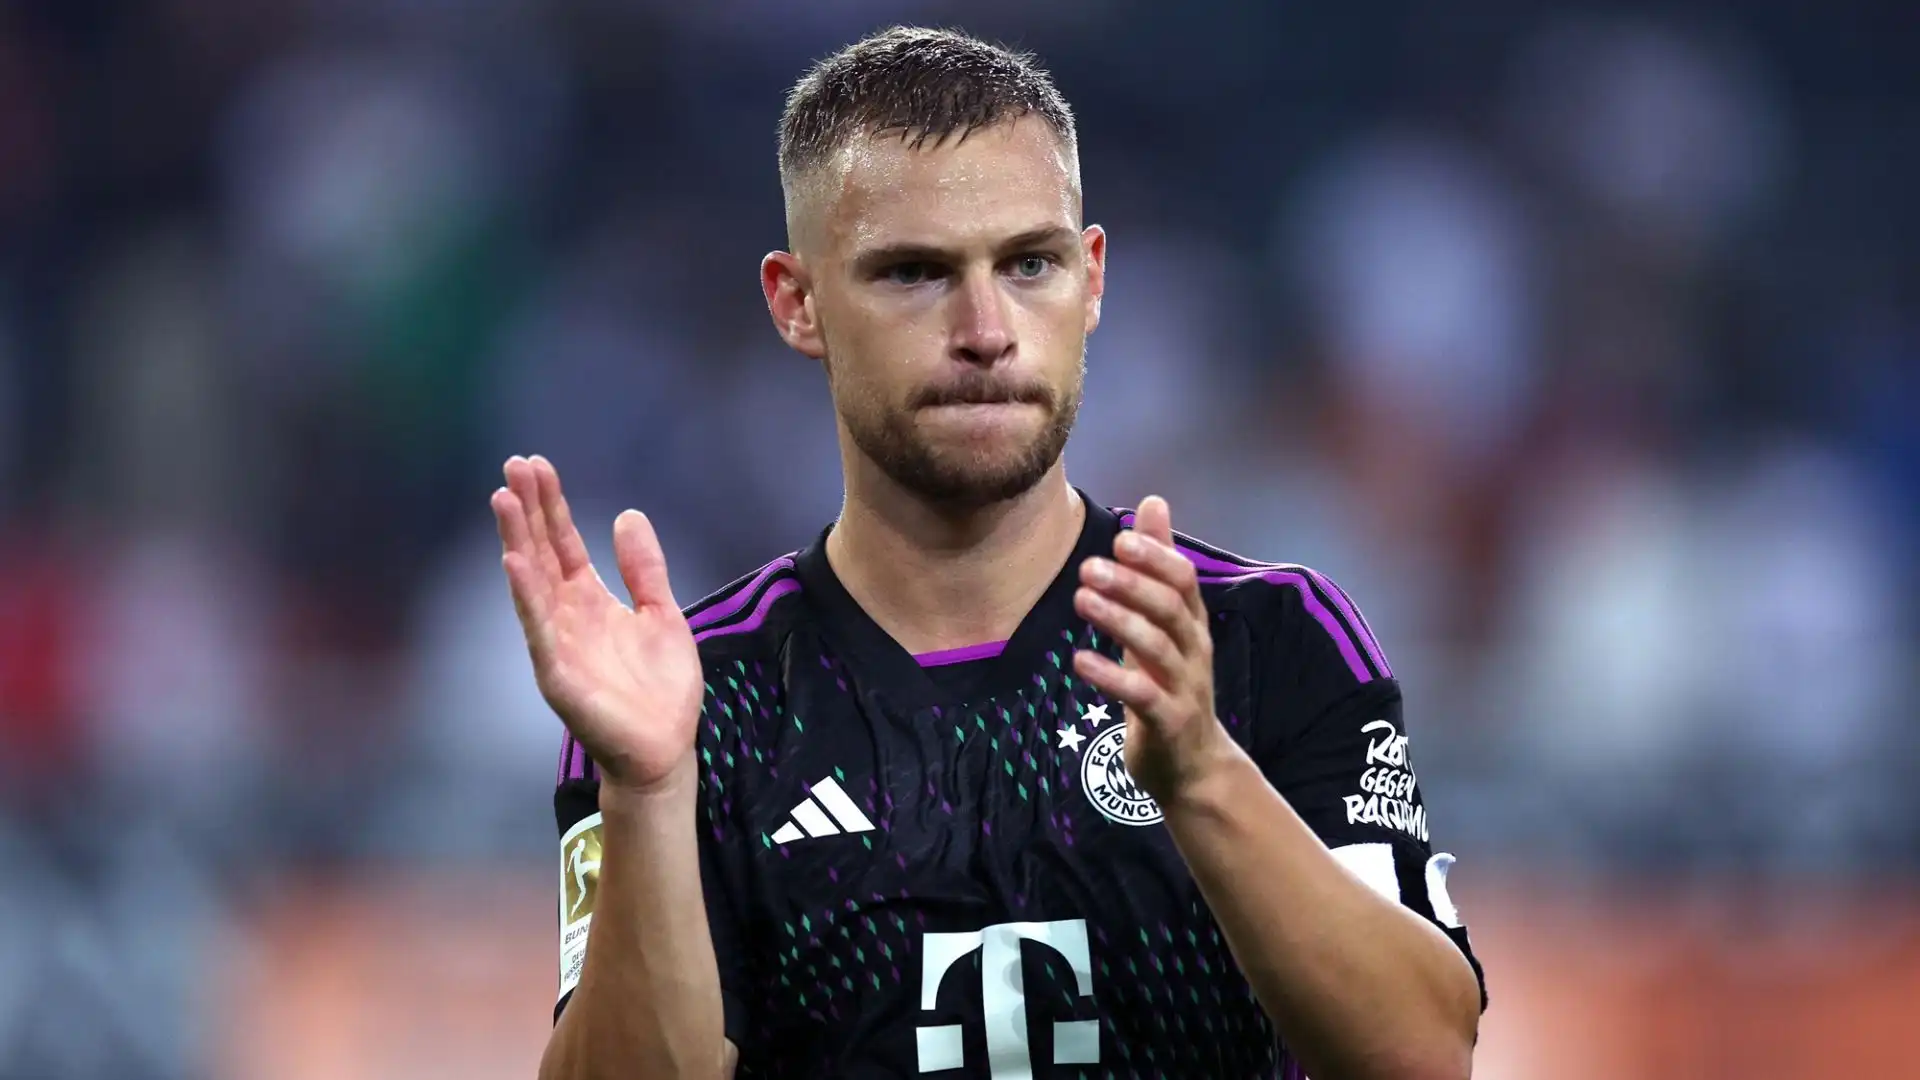 Il centrocampista tedesco potrebbe lasciare il Bayern Monaco in estate, e la società catalana è da mesi in contatto con il giocatore